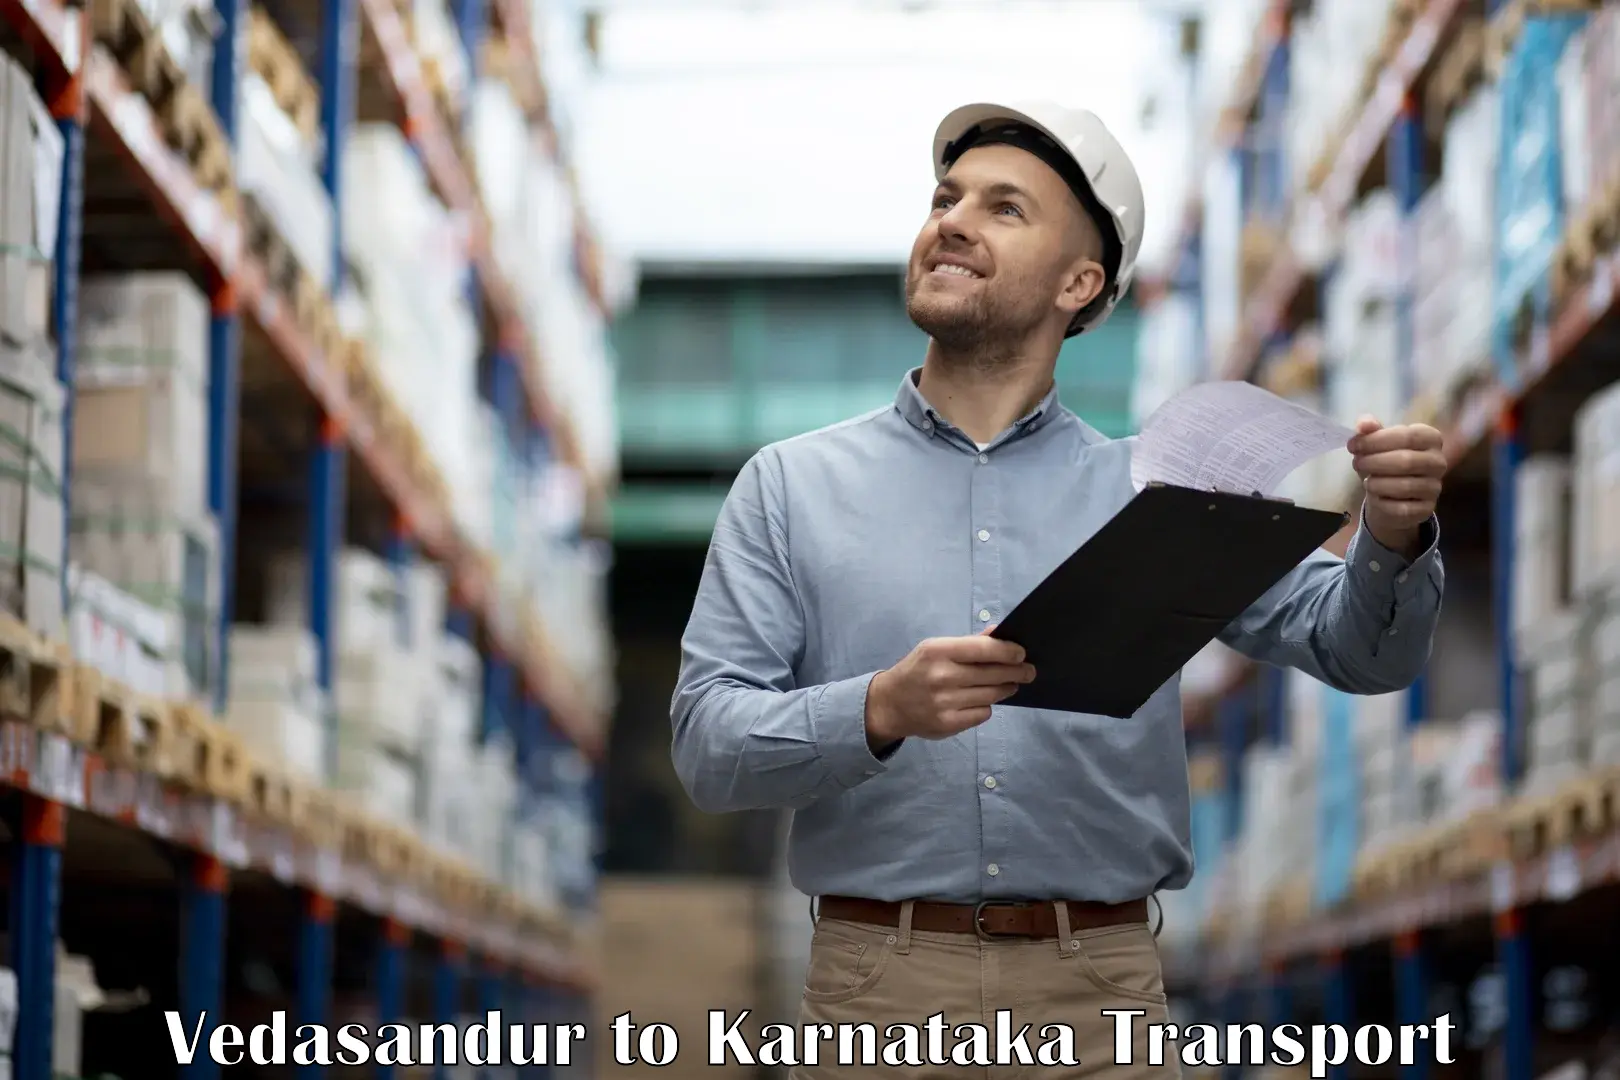 Part load transport service in India Vedasandur to Ranebennur